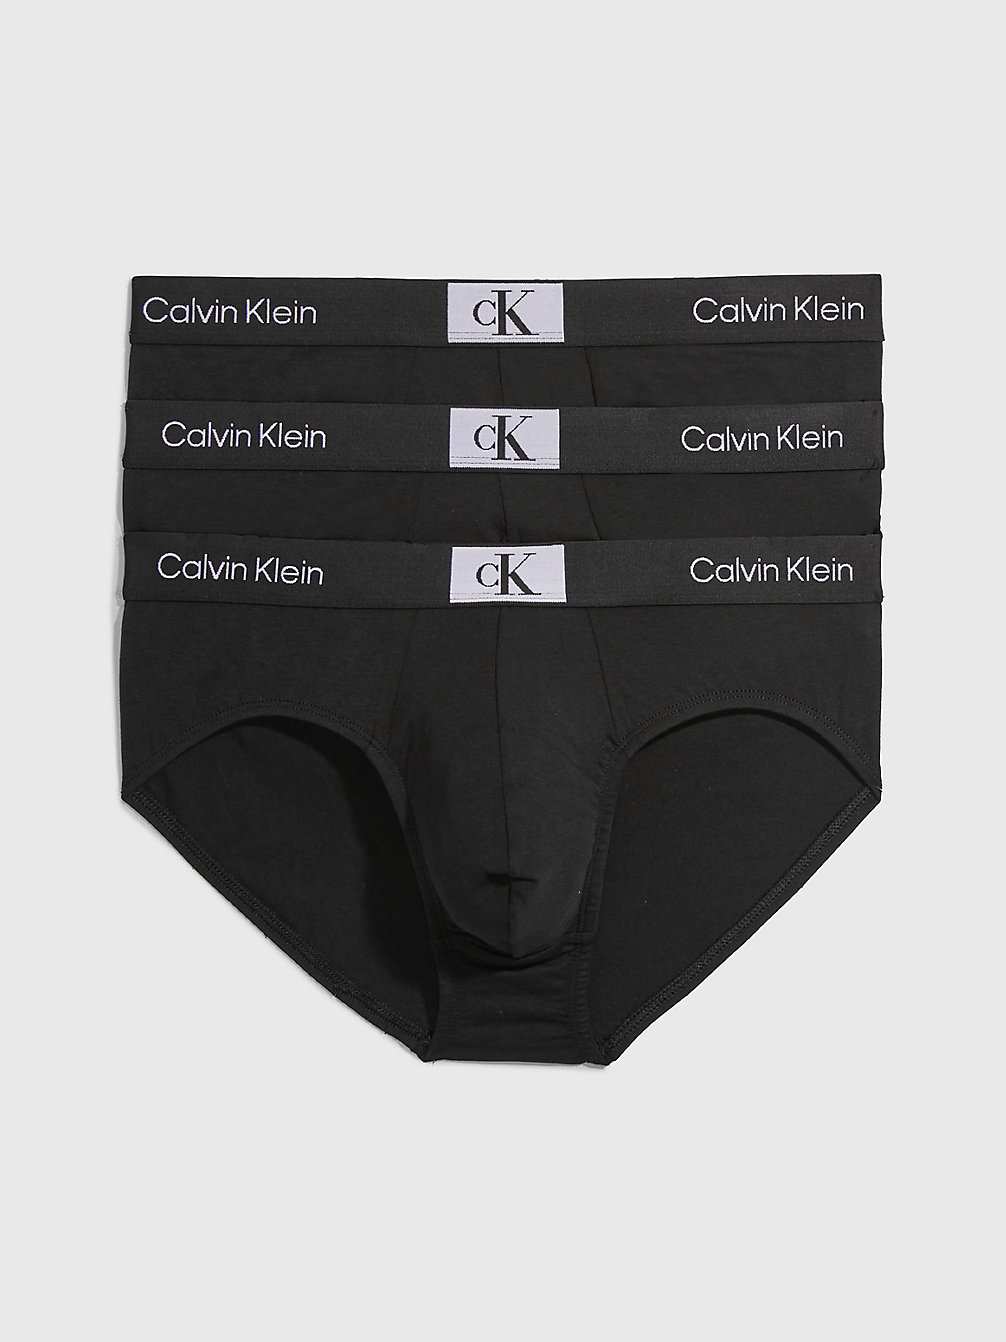 BLACK/BLACK/BLACK 3 Pack Briefs - Ck96 undefined men Calvin Klein